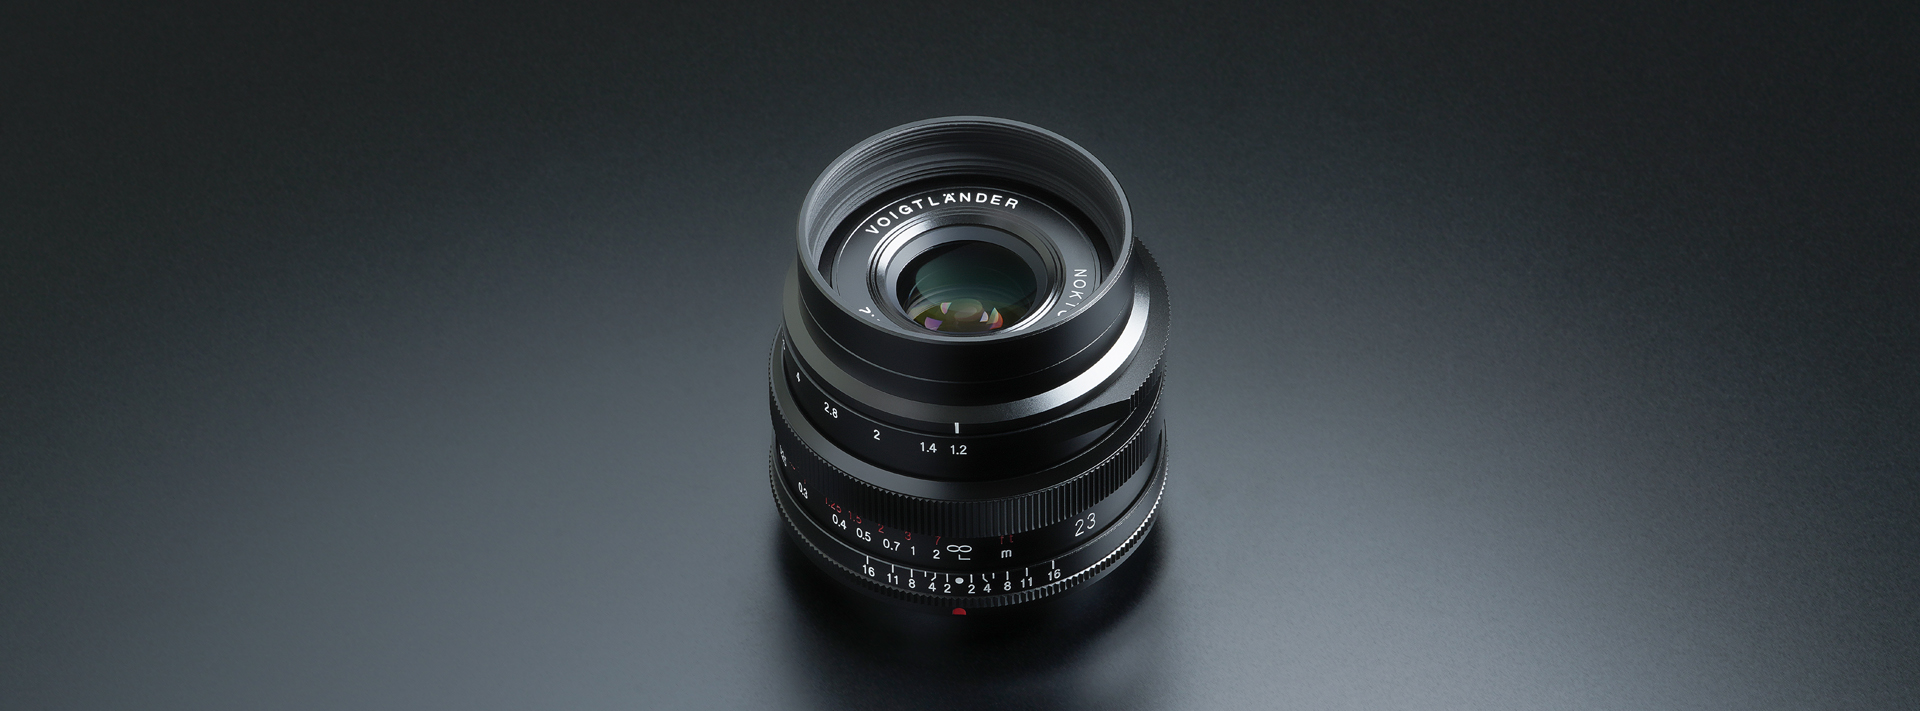 カメラ レンズ(単焦点) NOKTON 23mm F1.2 Aspherical - 株式会社コシナ